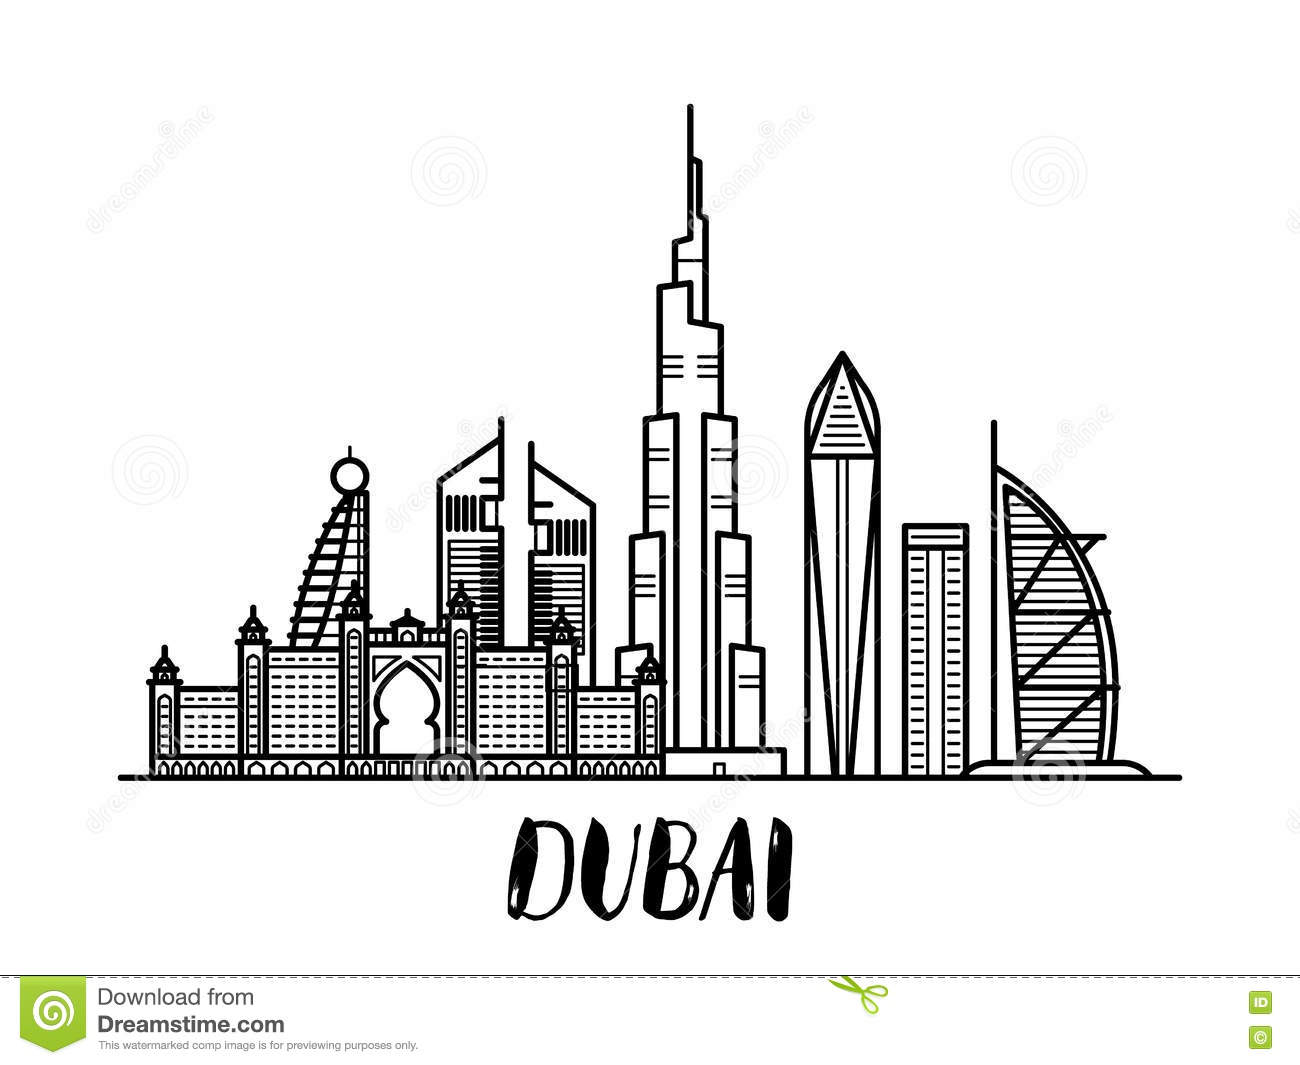 Dubai clipart look.